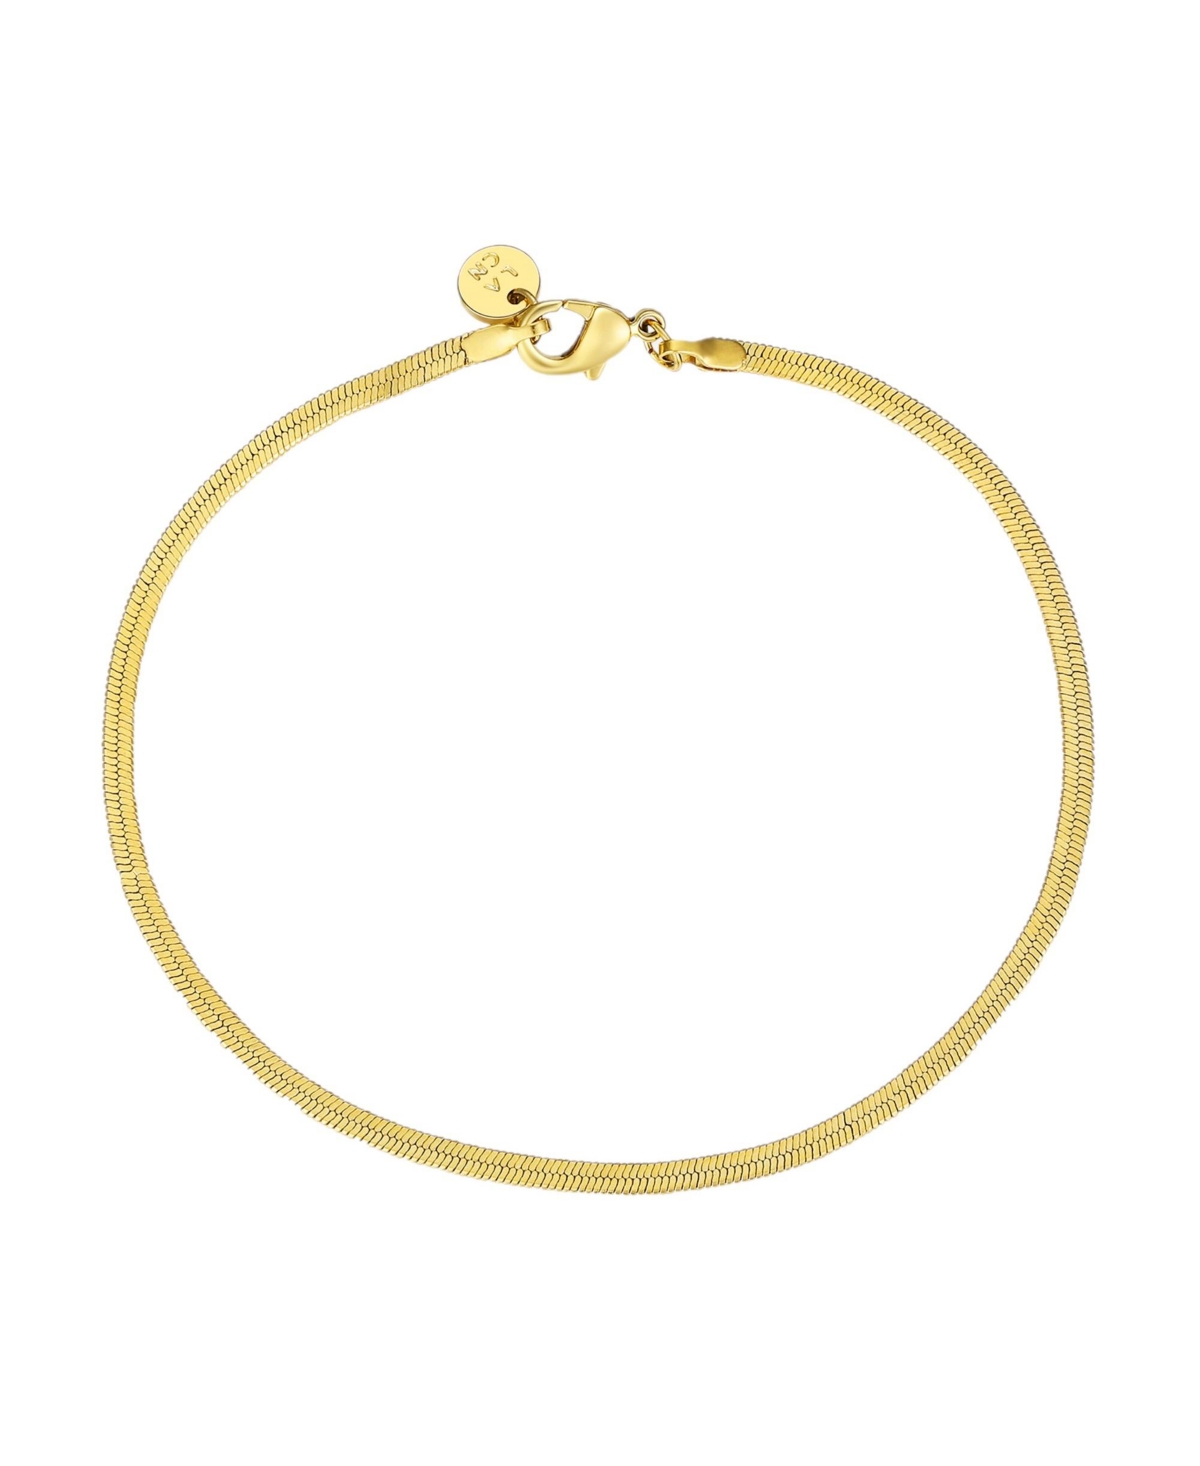 Gold-Tone Stainless Steel Herringbone Bracelet - Gold